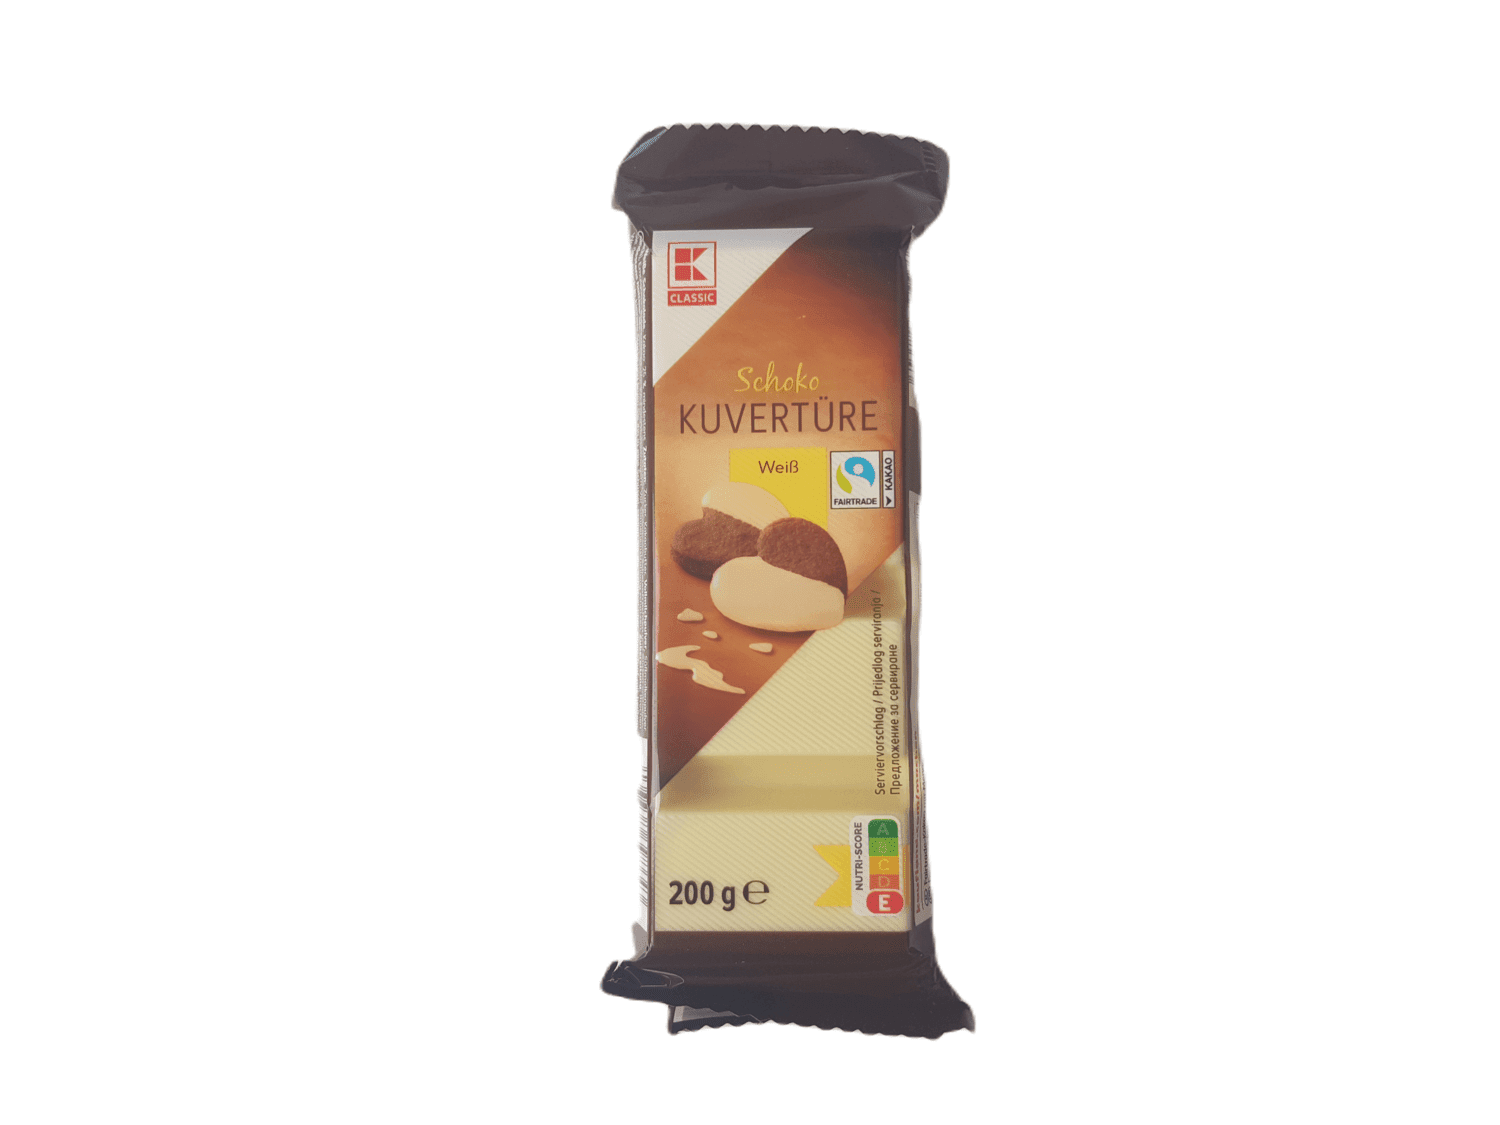 Čokoládová poleva bílá čokoláda 200g kuventura - Kaufland